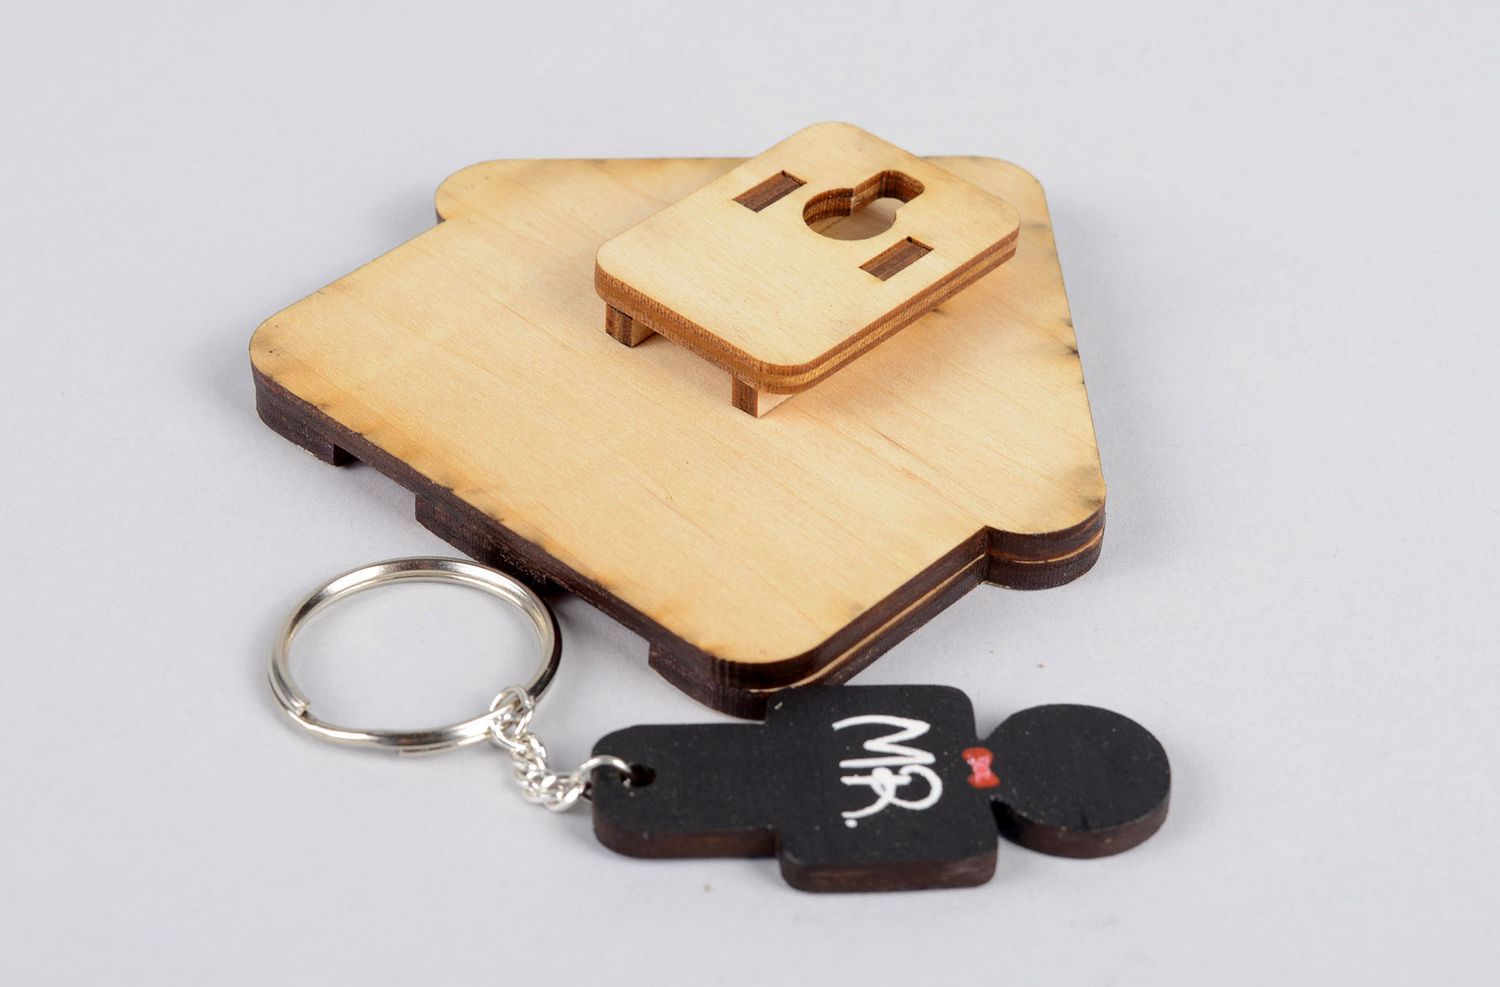 Homemade home decor wooden key hanger key holder wooden gifts key hooks photo 3